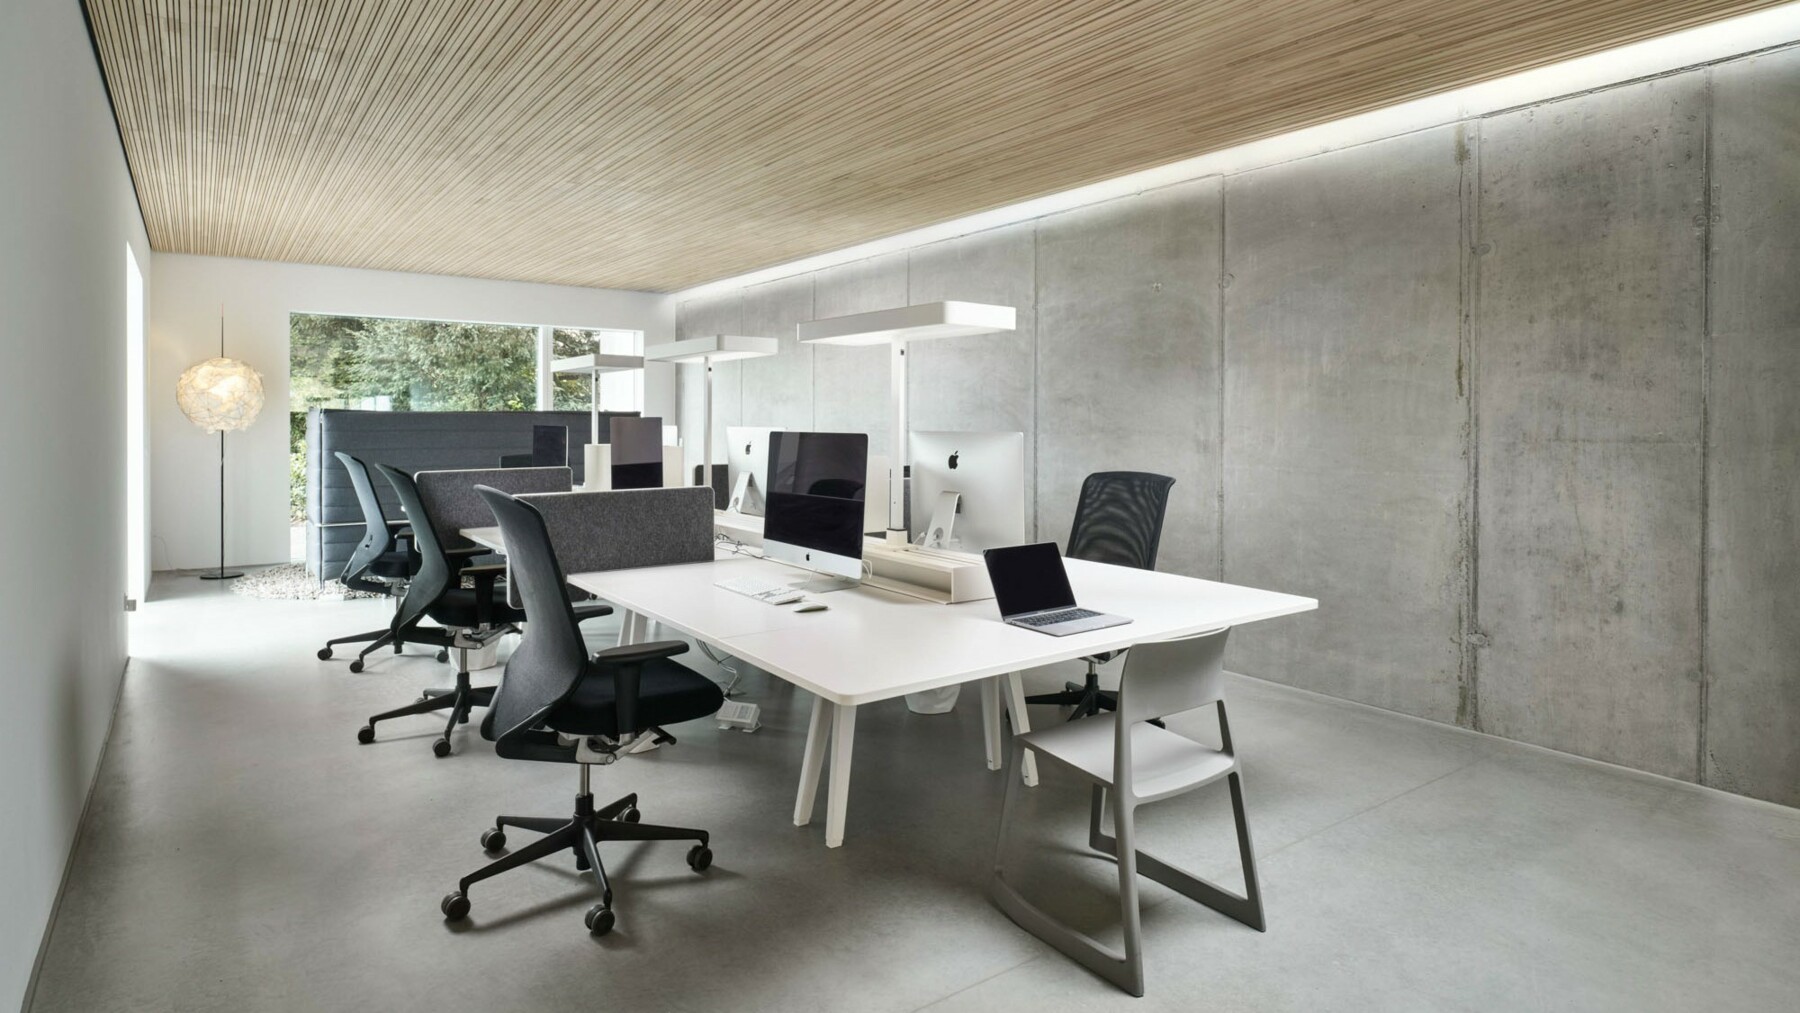 Die Bürowände im Industrial Style werden kontrastiert durch die Deckenverkleidung in LIGNO® Akustik nature:3D, welche durch die unterschiedliche Leistenhöhen einen dynamischen, lebendigen Effekt erzielen. 